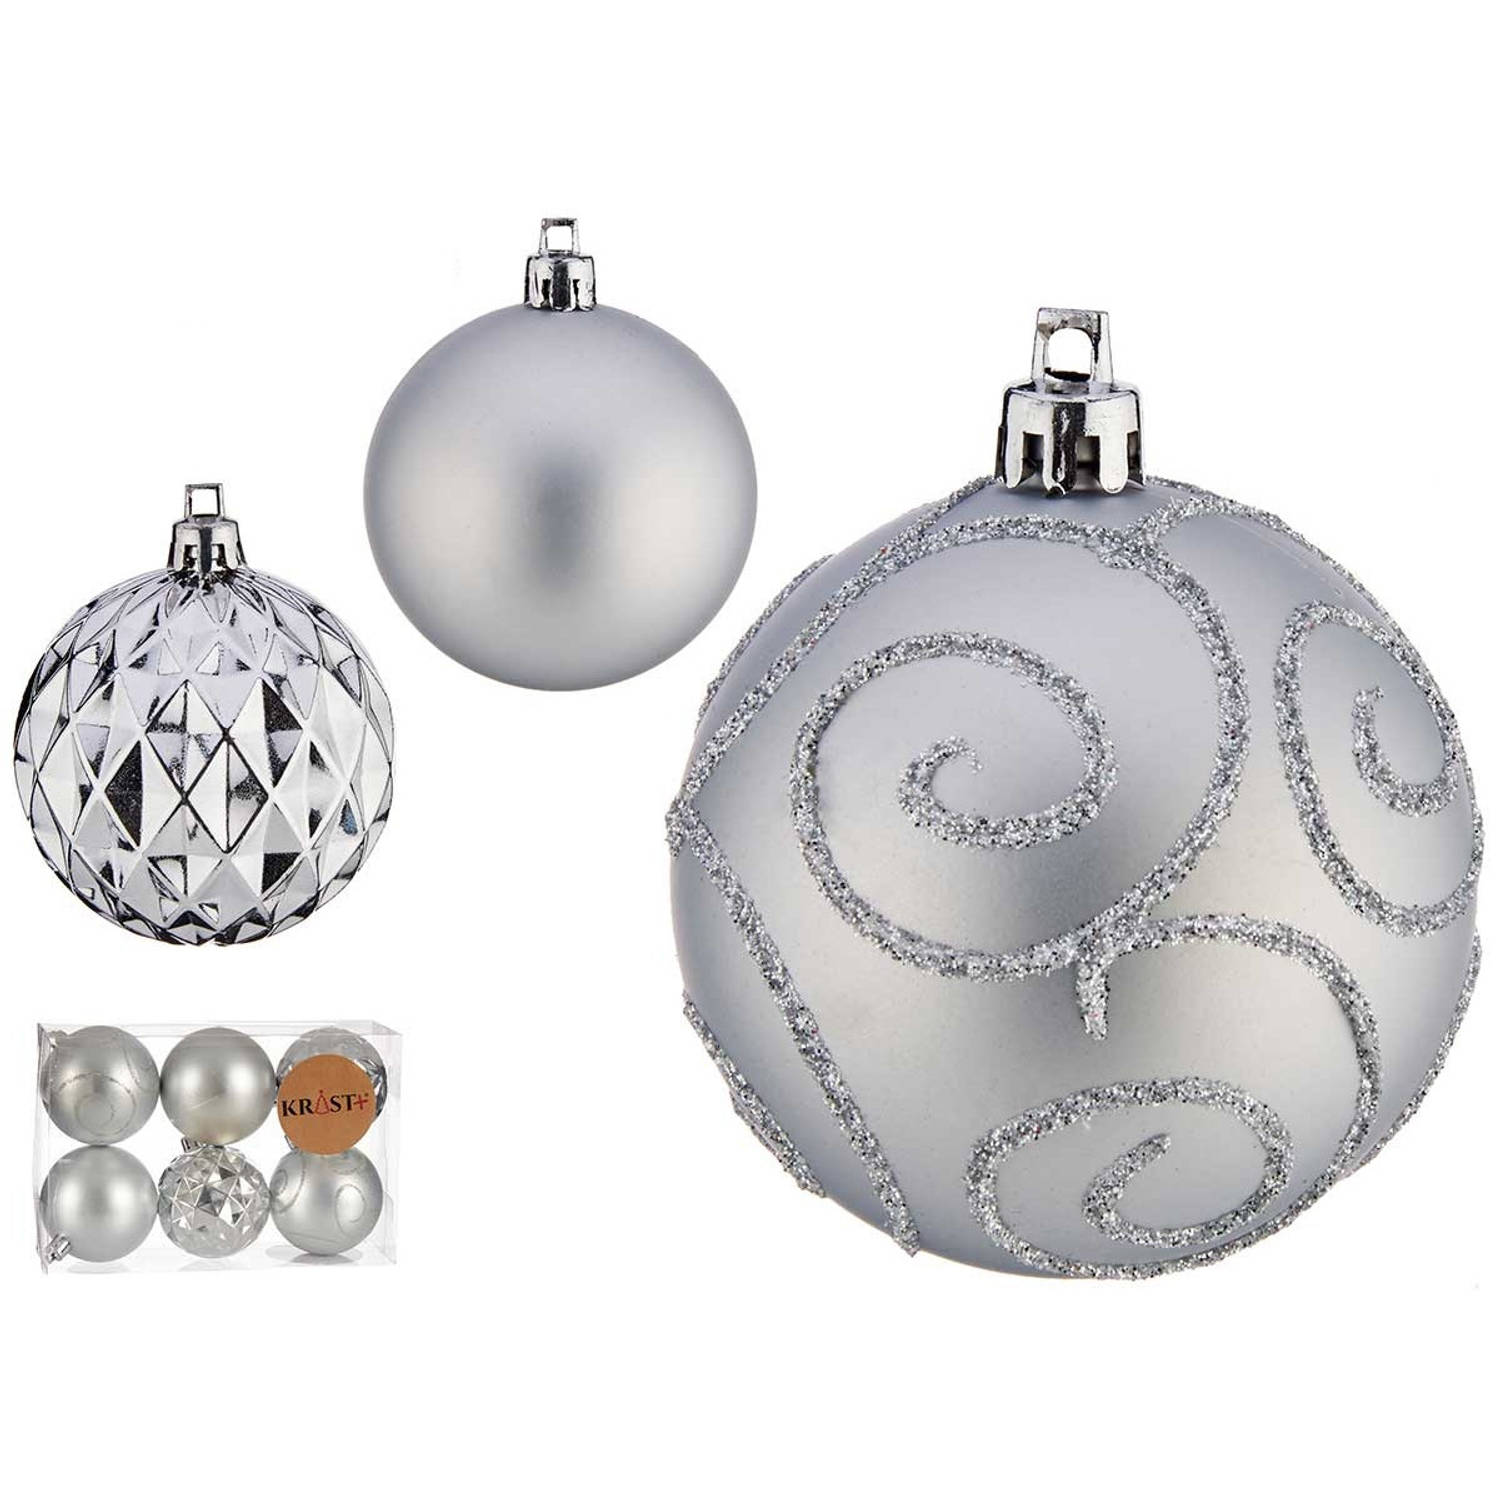 Krist+ gedecoreerde kerstballen - 6x stuks - zilver - kunststof - 6 cm